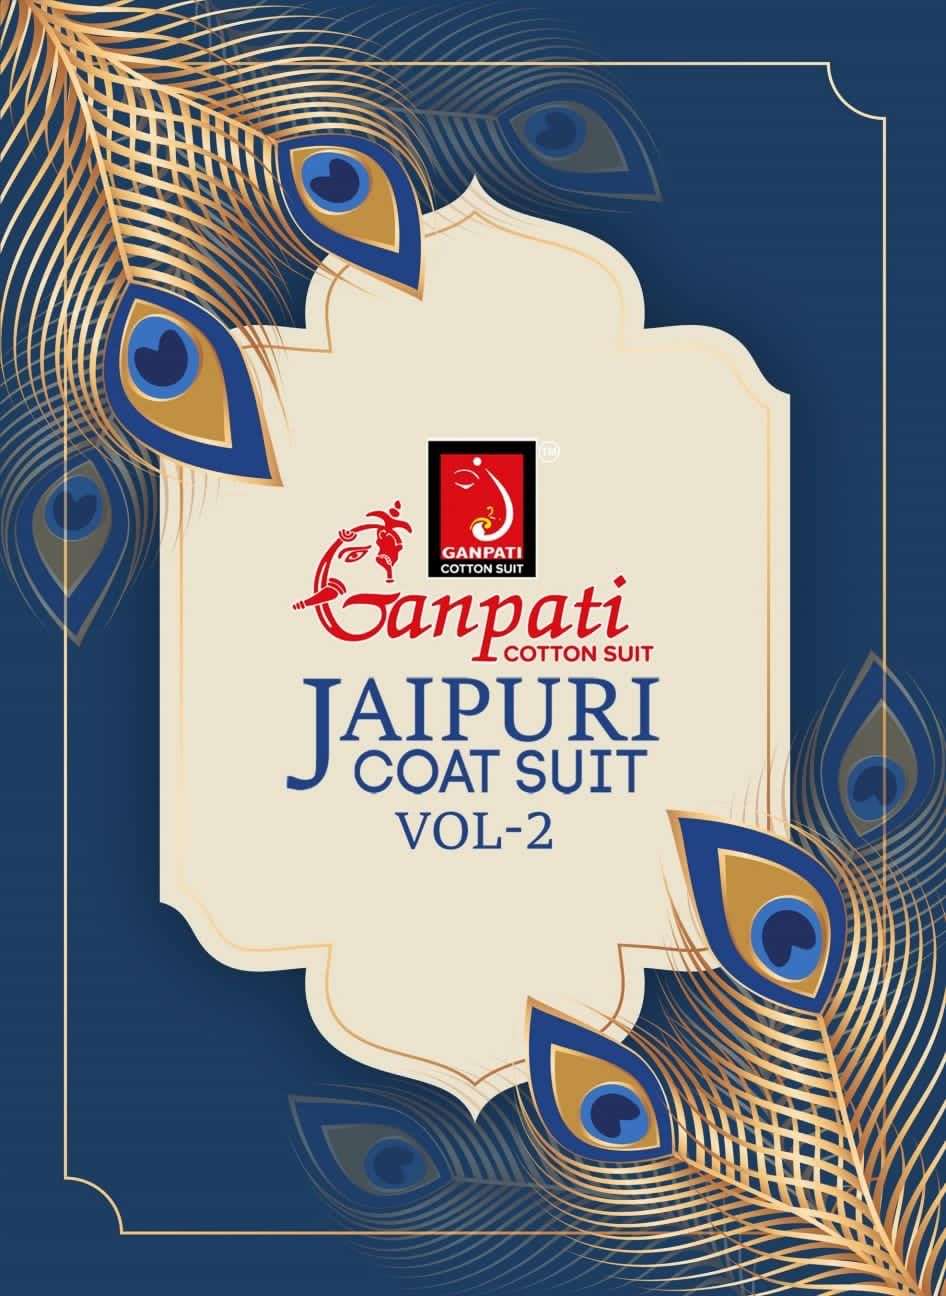 Ganpati Jaipuri Coat Suit Vol 2 Fancy Cotton Cord Set Ladies Wear Collection